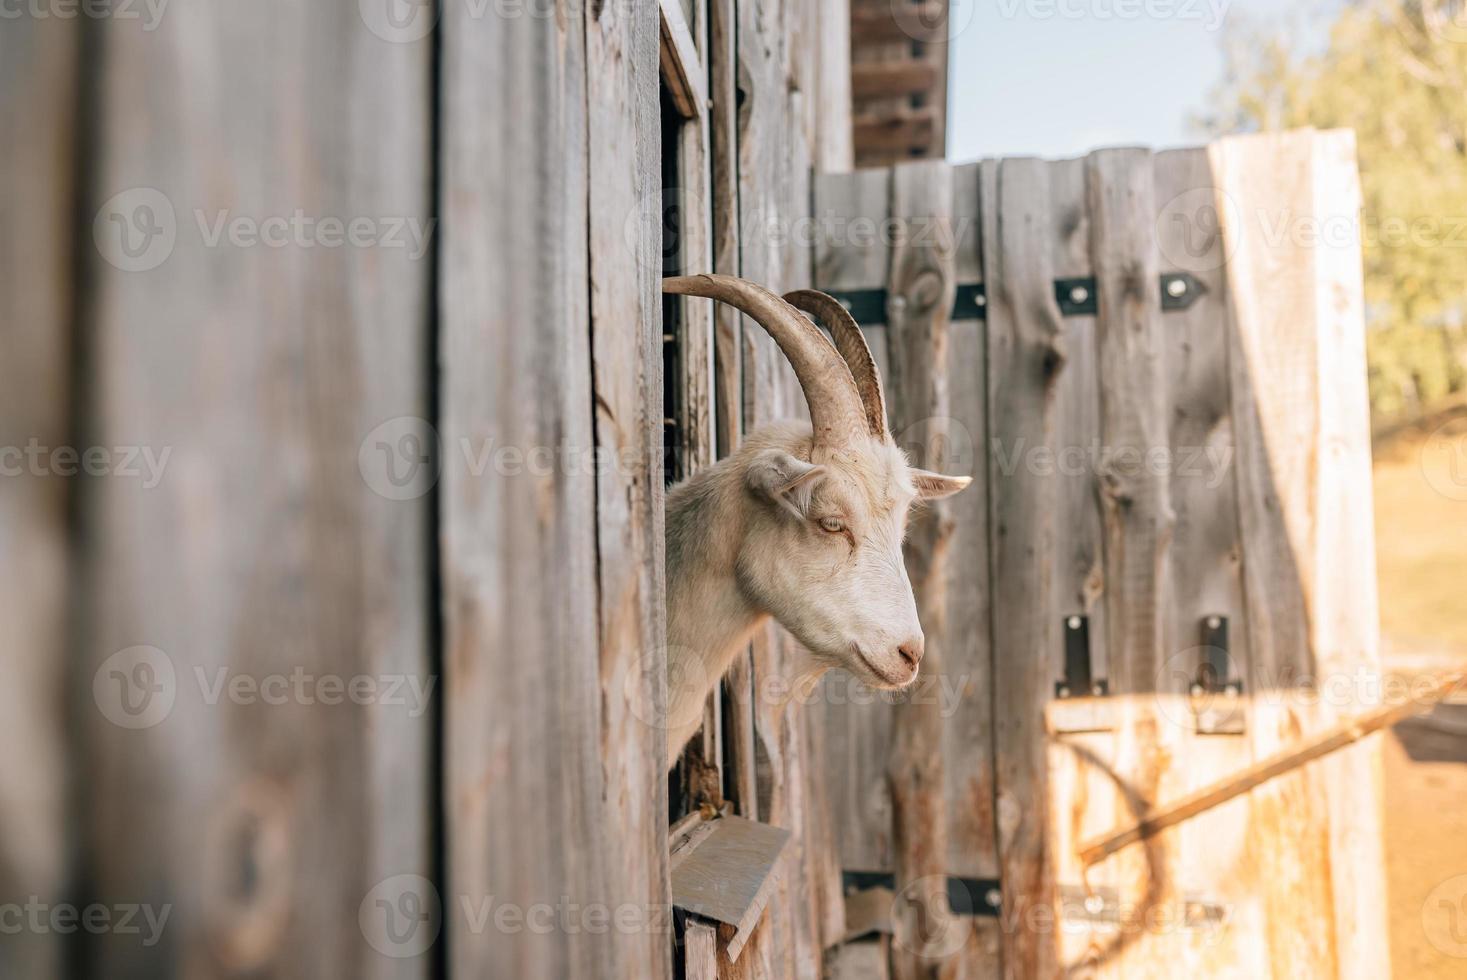 une chèvre curieuse sortit la tête de l'enclos en bois photo